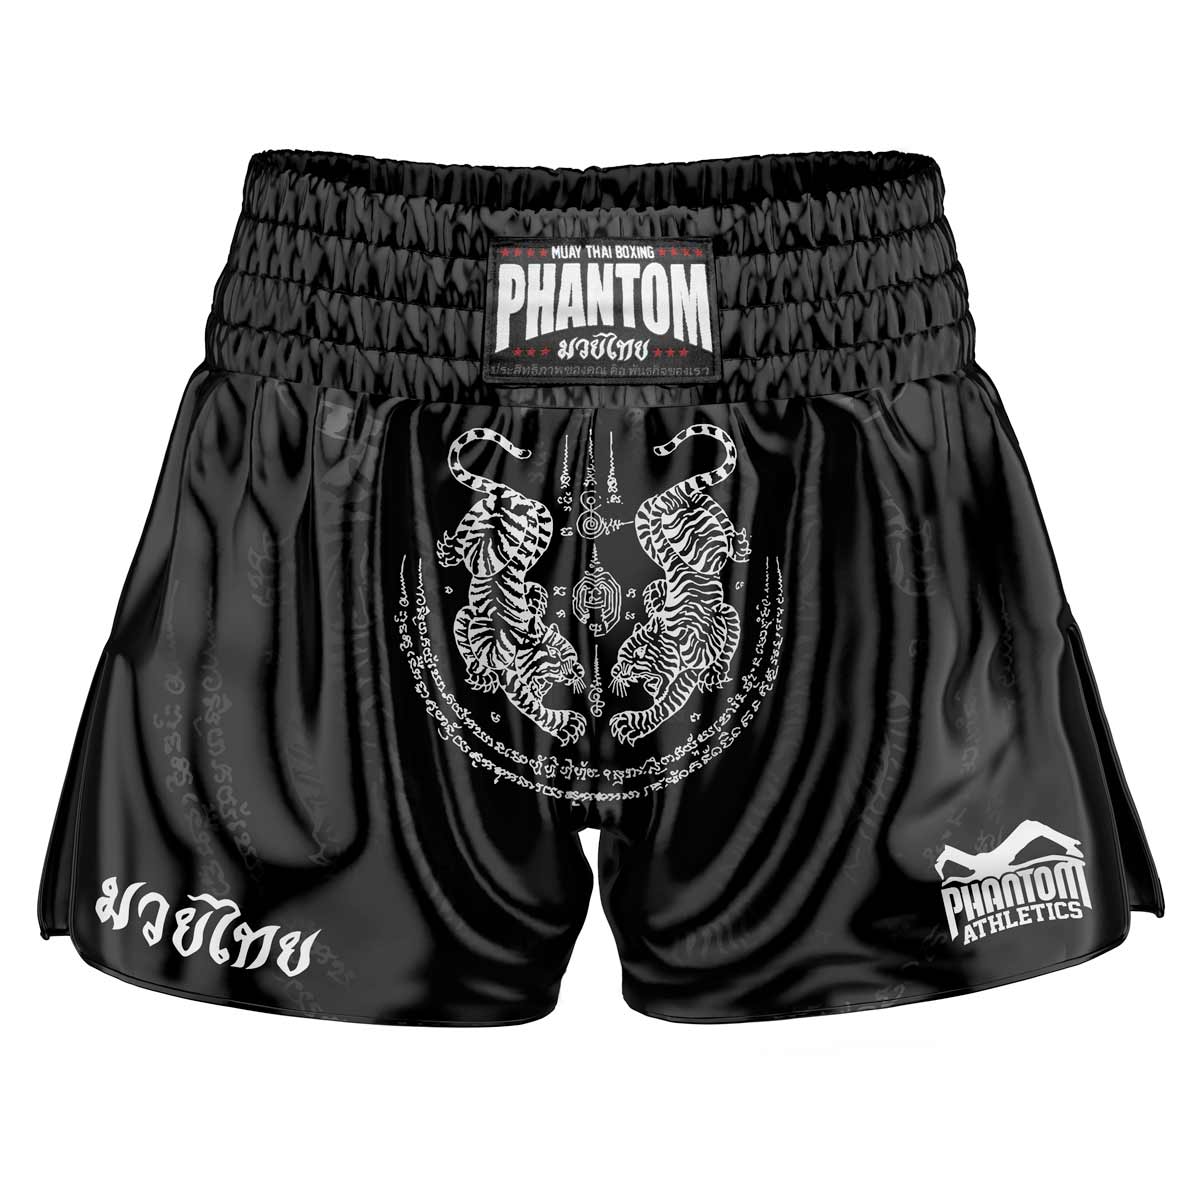 Mustad Phantom Muay Thai lühikesed püksid SAK YANT. Traditsioonilise tiigrikujundusega vana kooli satiinkangas annab originaalse Tai tunde. Tavapärases Phantom Athletics kvaliteedis. Ideaalne teie Tai poksi treeninguteks ja võistlusteks.